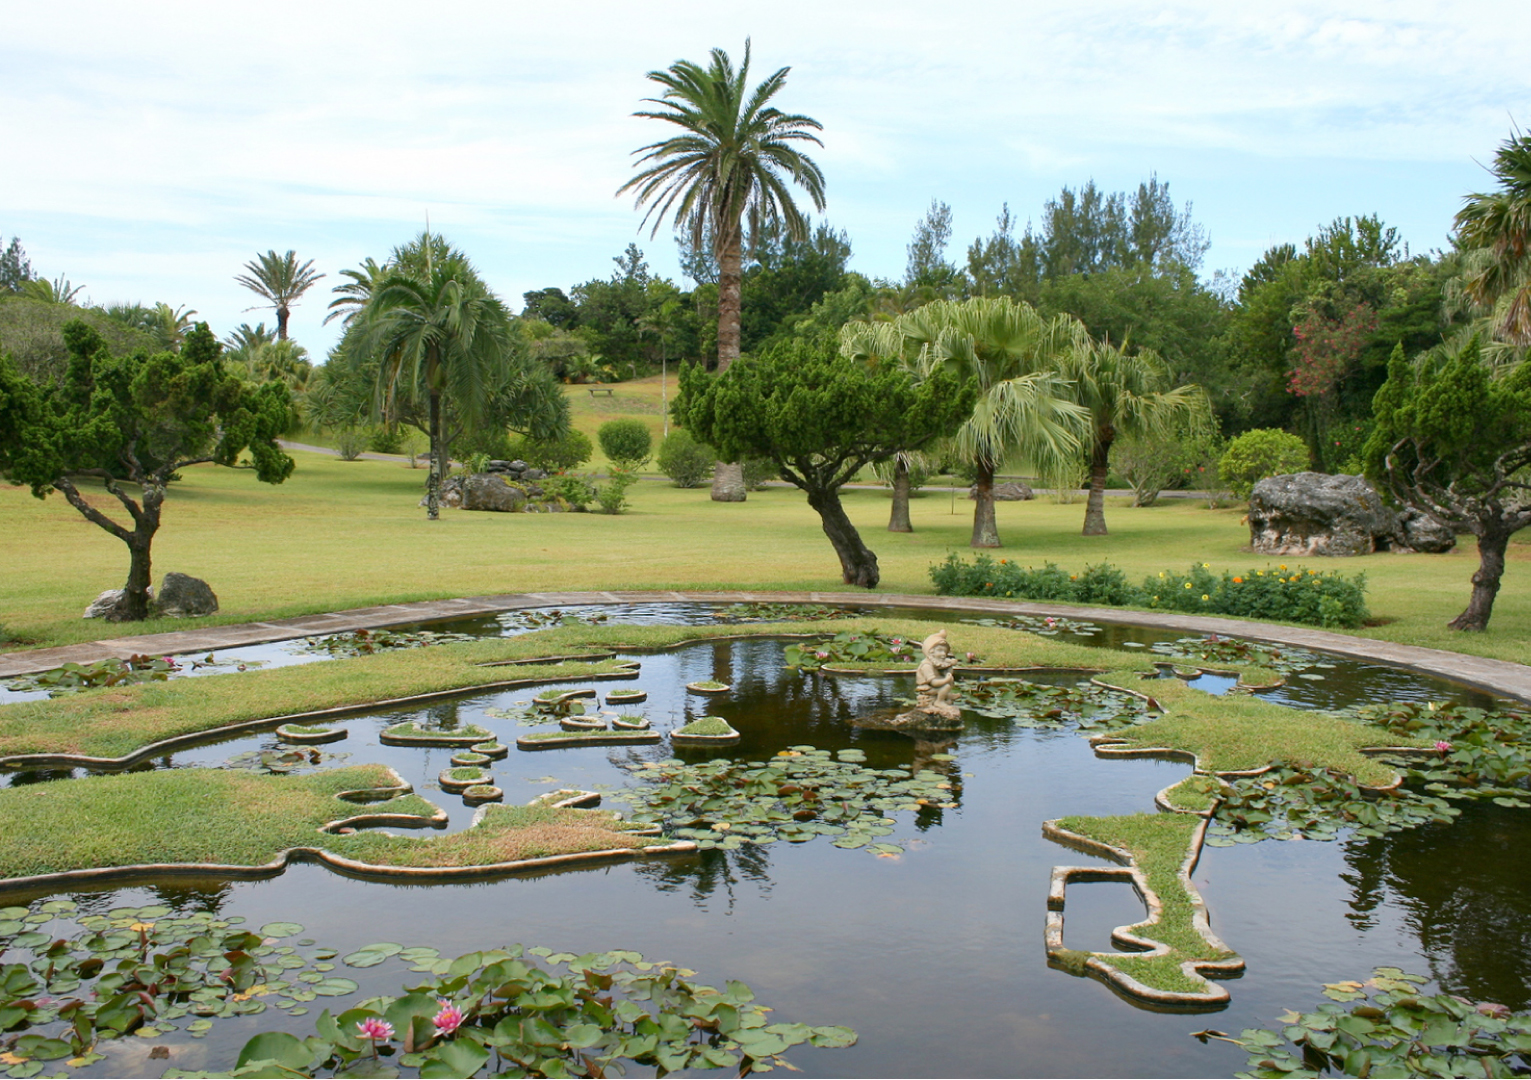 Gibbon's Garden (Palm Grove)